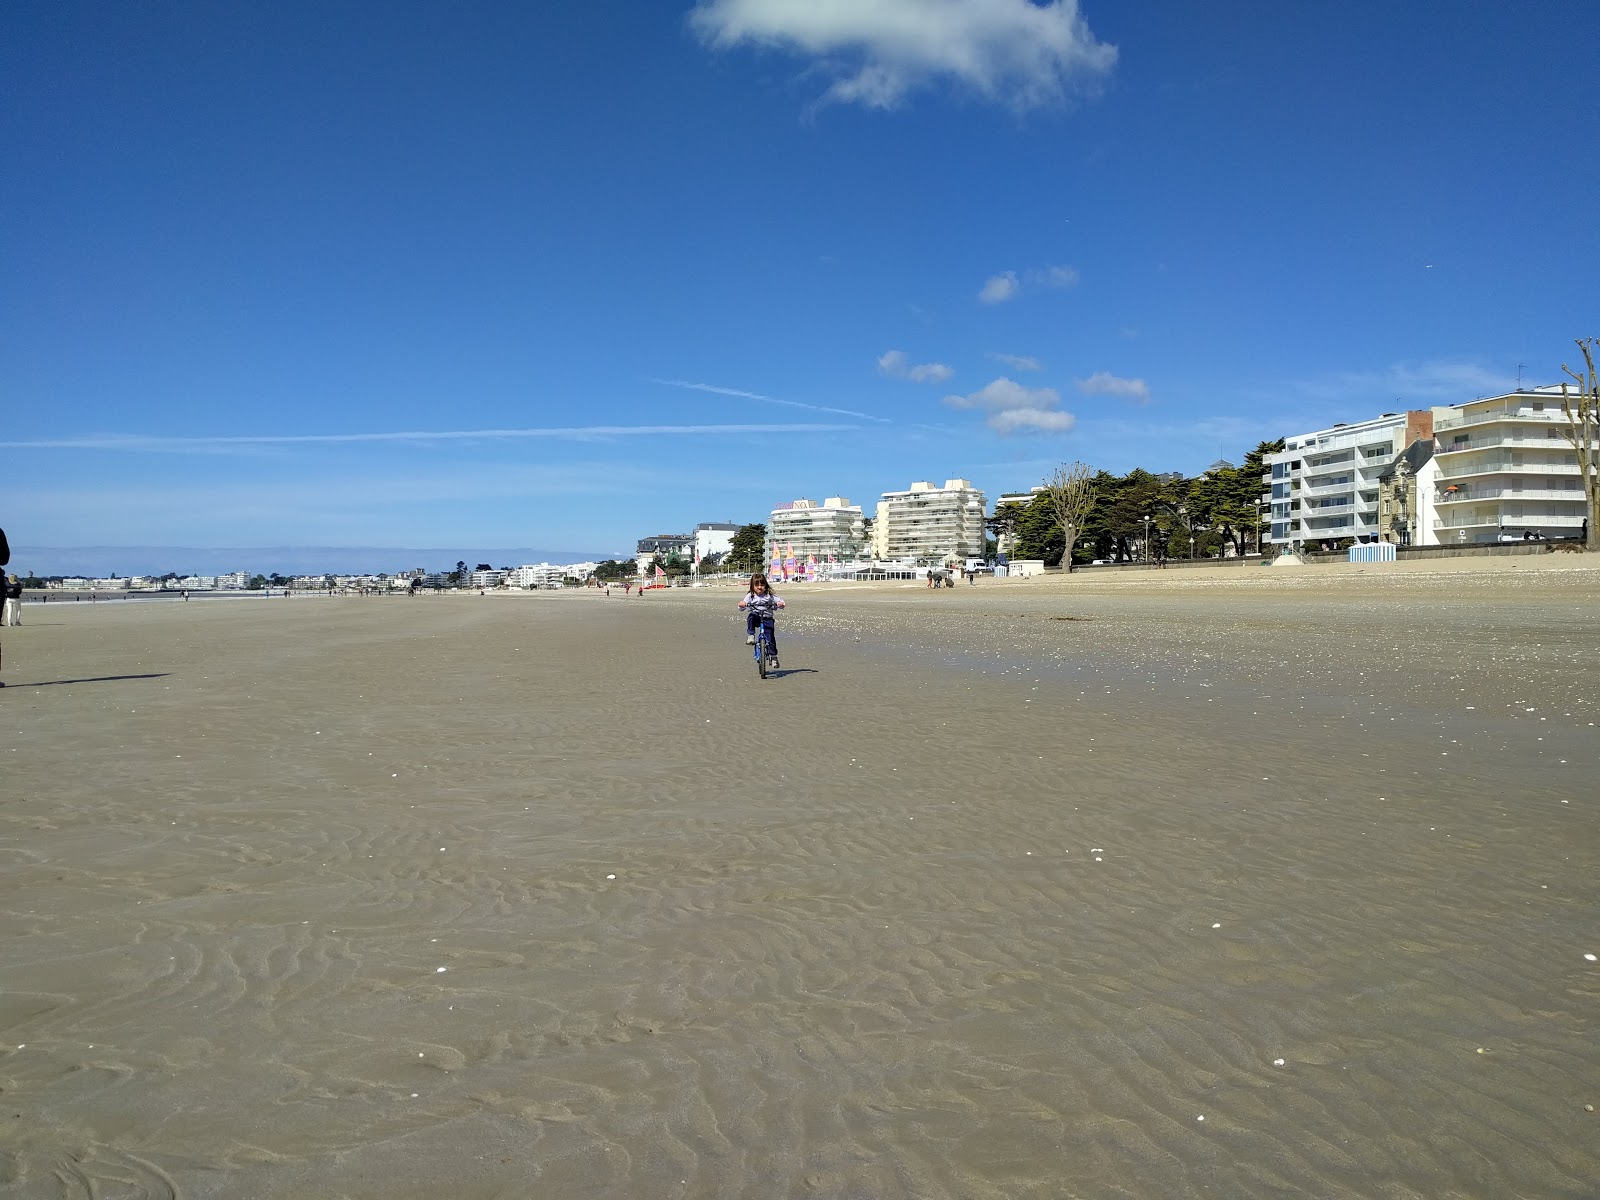 Foto af Benoit beach - populært sted blandt afslapningskendere